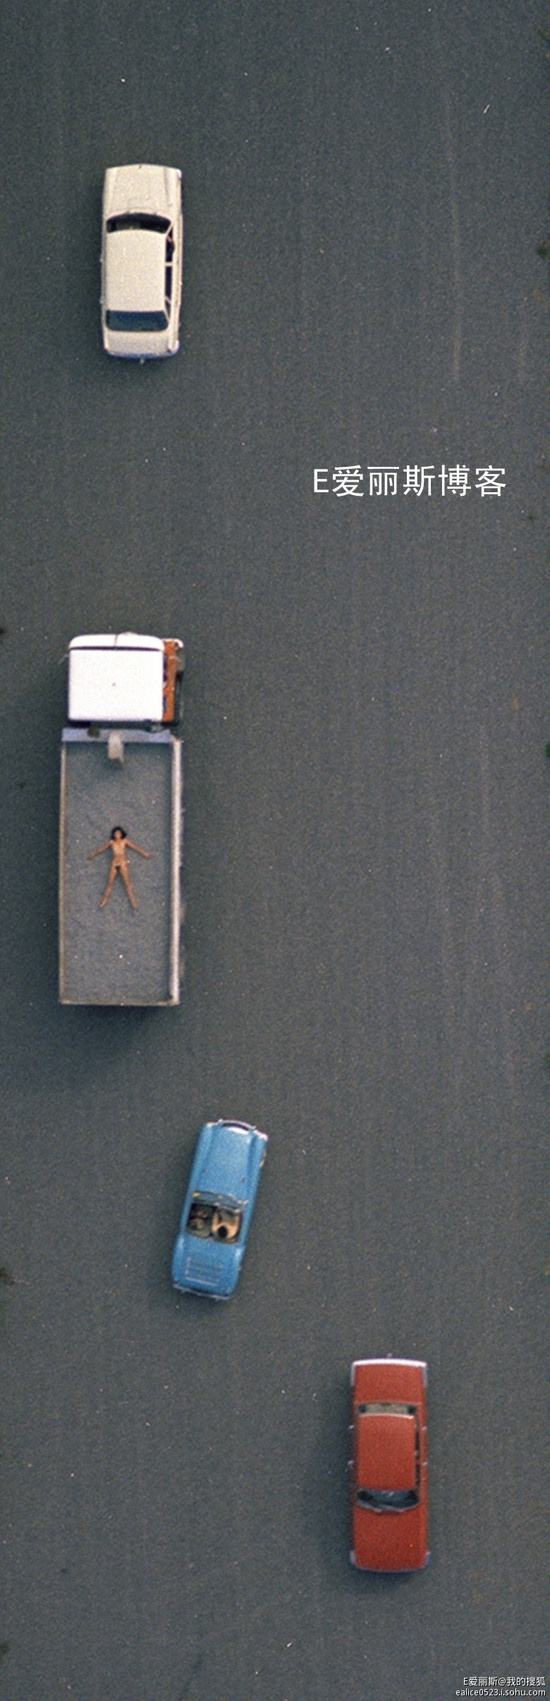 养猪场机场跑道海边 摄影师航拍妻子裸照25年后曝光(组图)